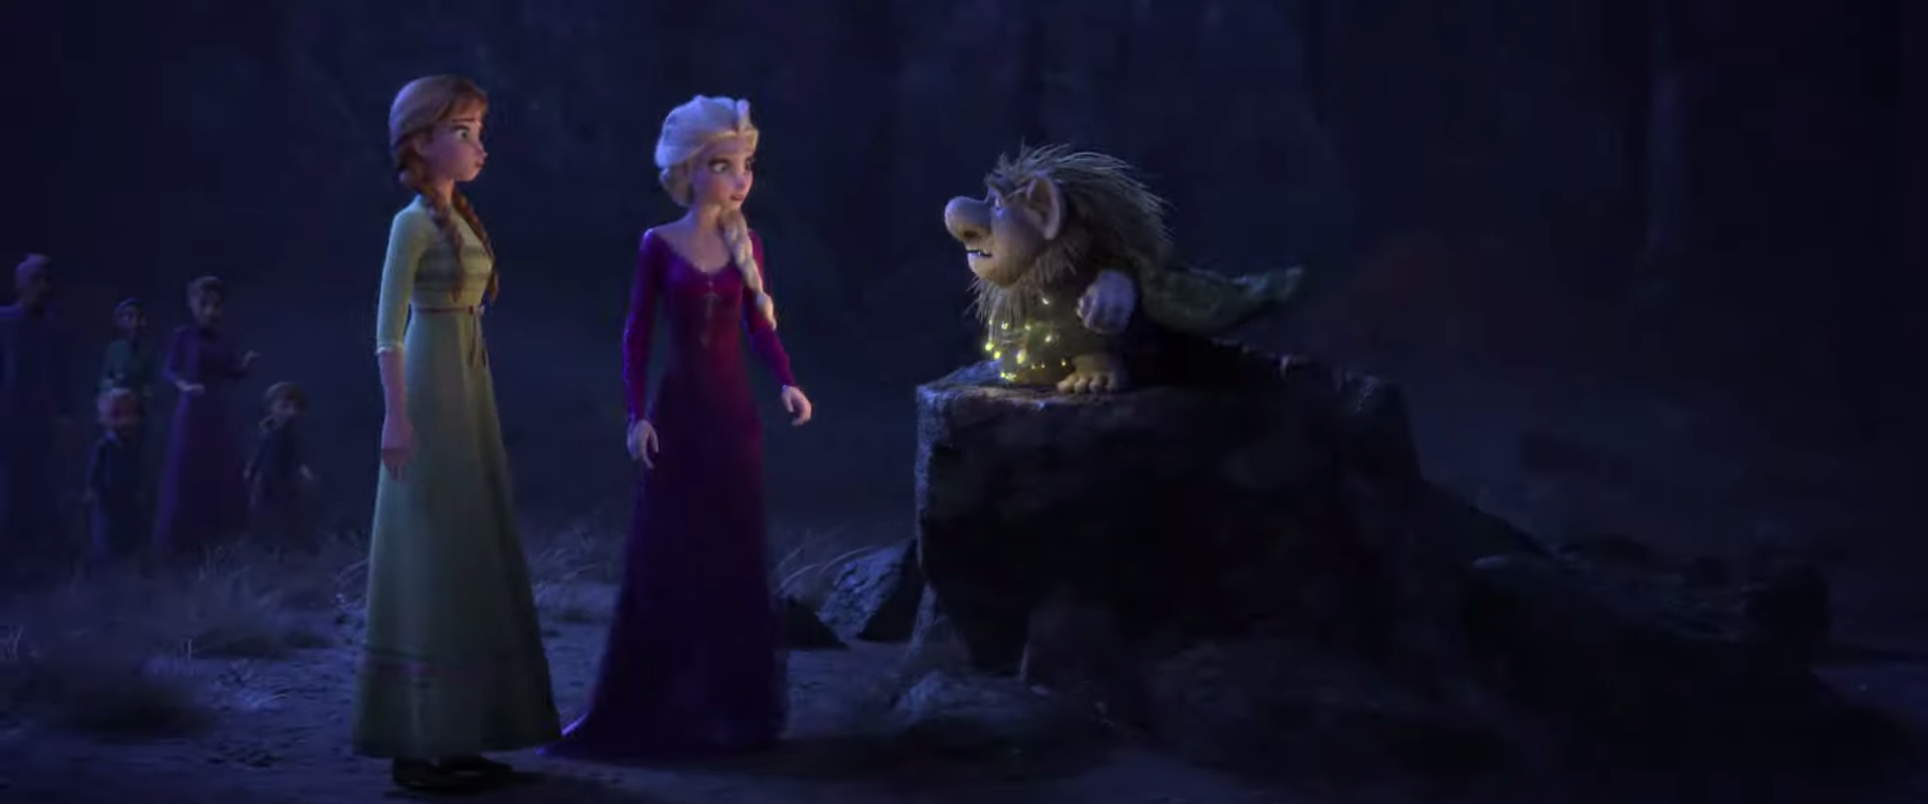 Frozen 2 tung trailer hoành tráng chẳng khác nào phim siêu anh hùng - Ảnh 3.